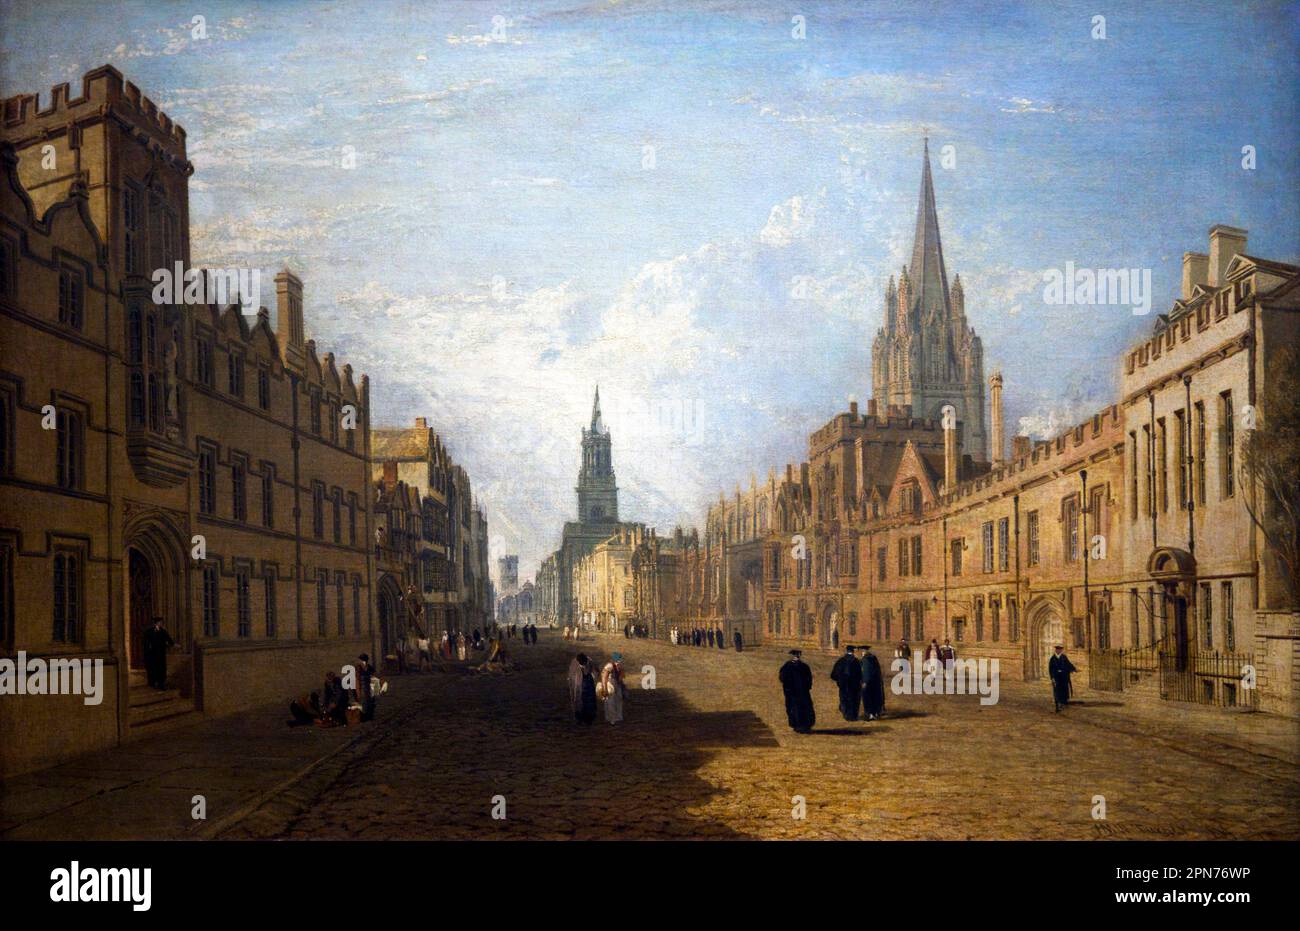 Vista della High Street, Oxford, Joseph Mallord William Turner, 1810, Ashmolean Museum, University of Oxford, Oxfordshire, Inghilterra, Regno Unito Foto Stock